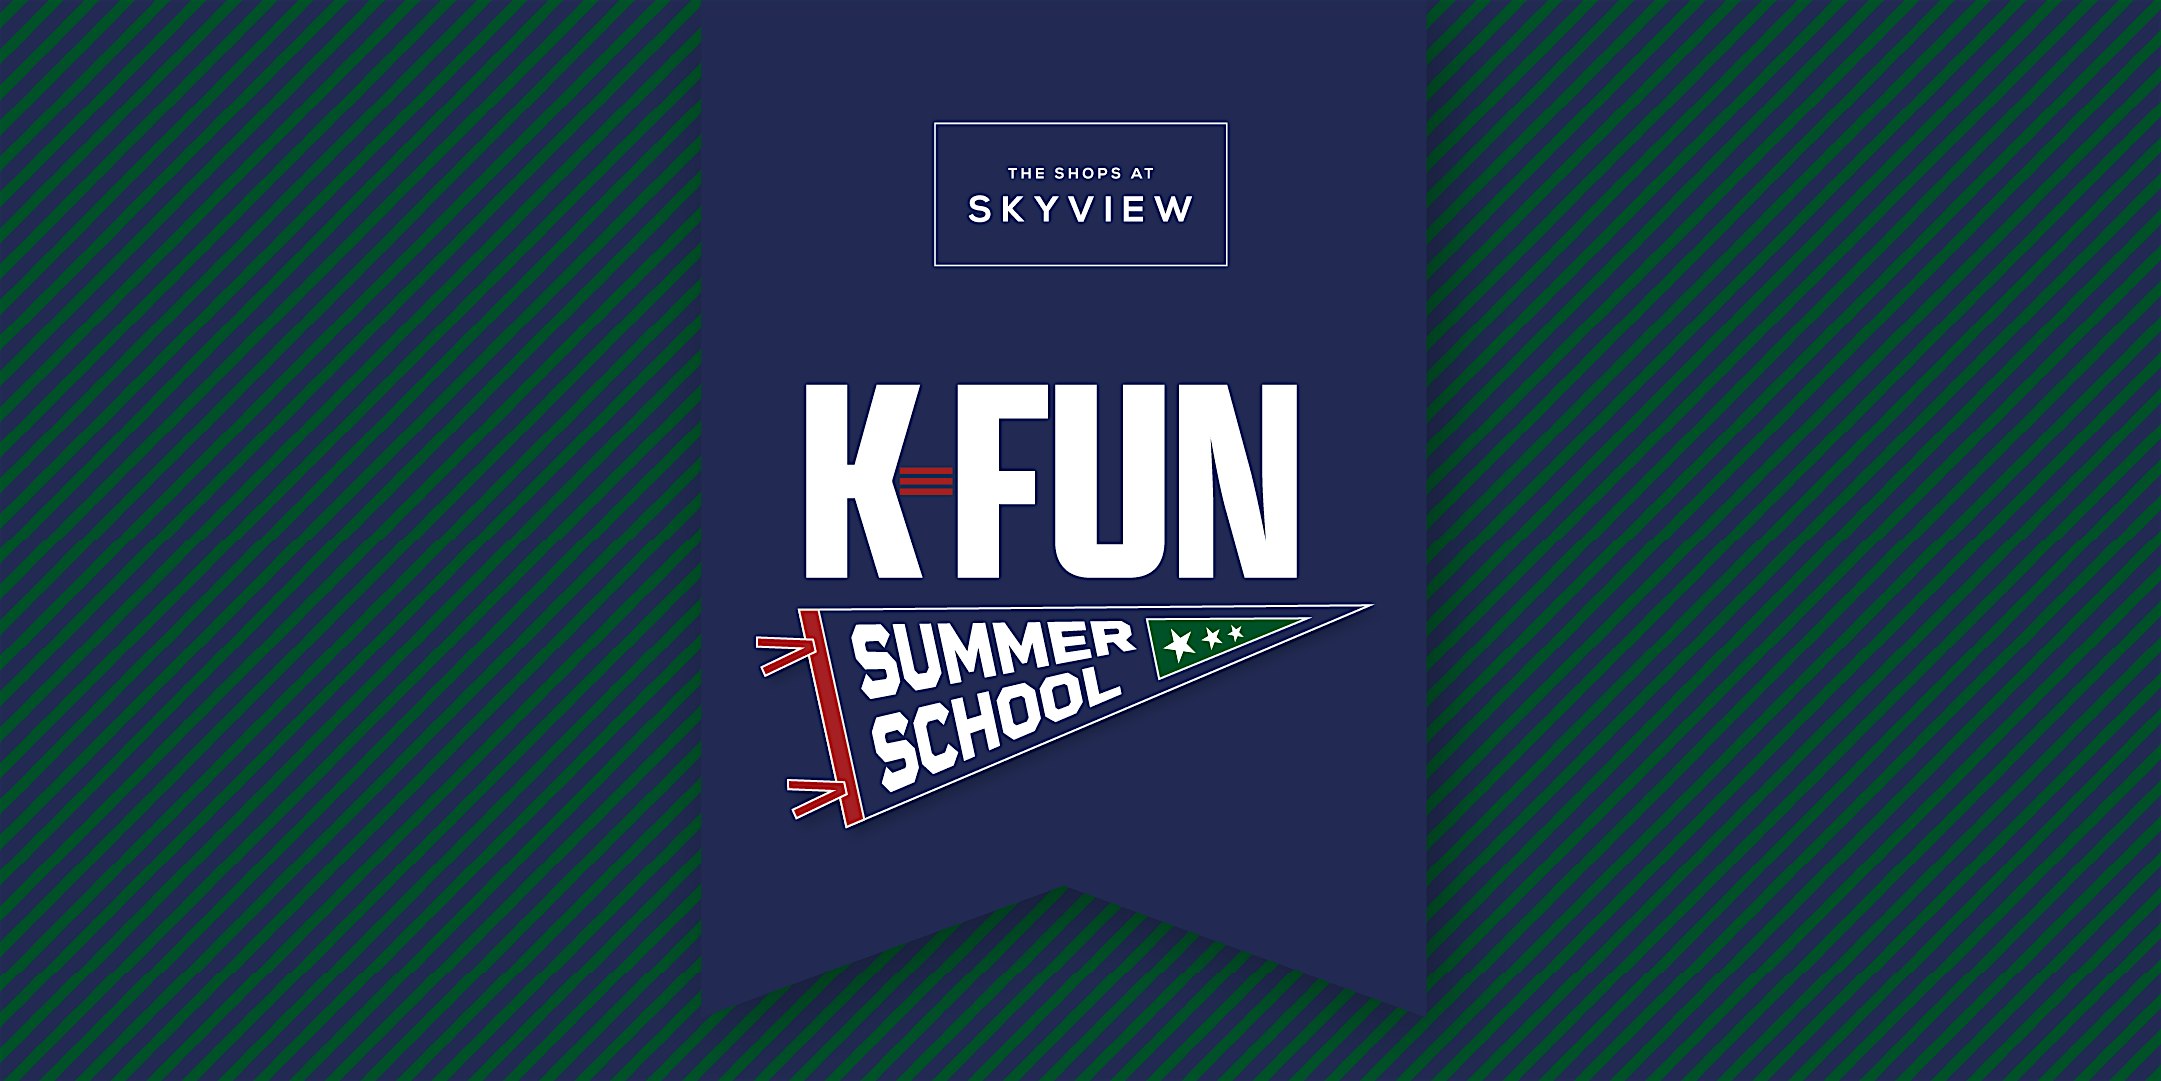 Skyview "K-FUN" Summer School | K-Pop Day (Zone 1 Standing)